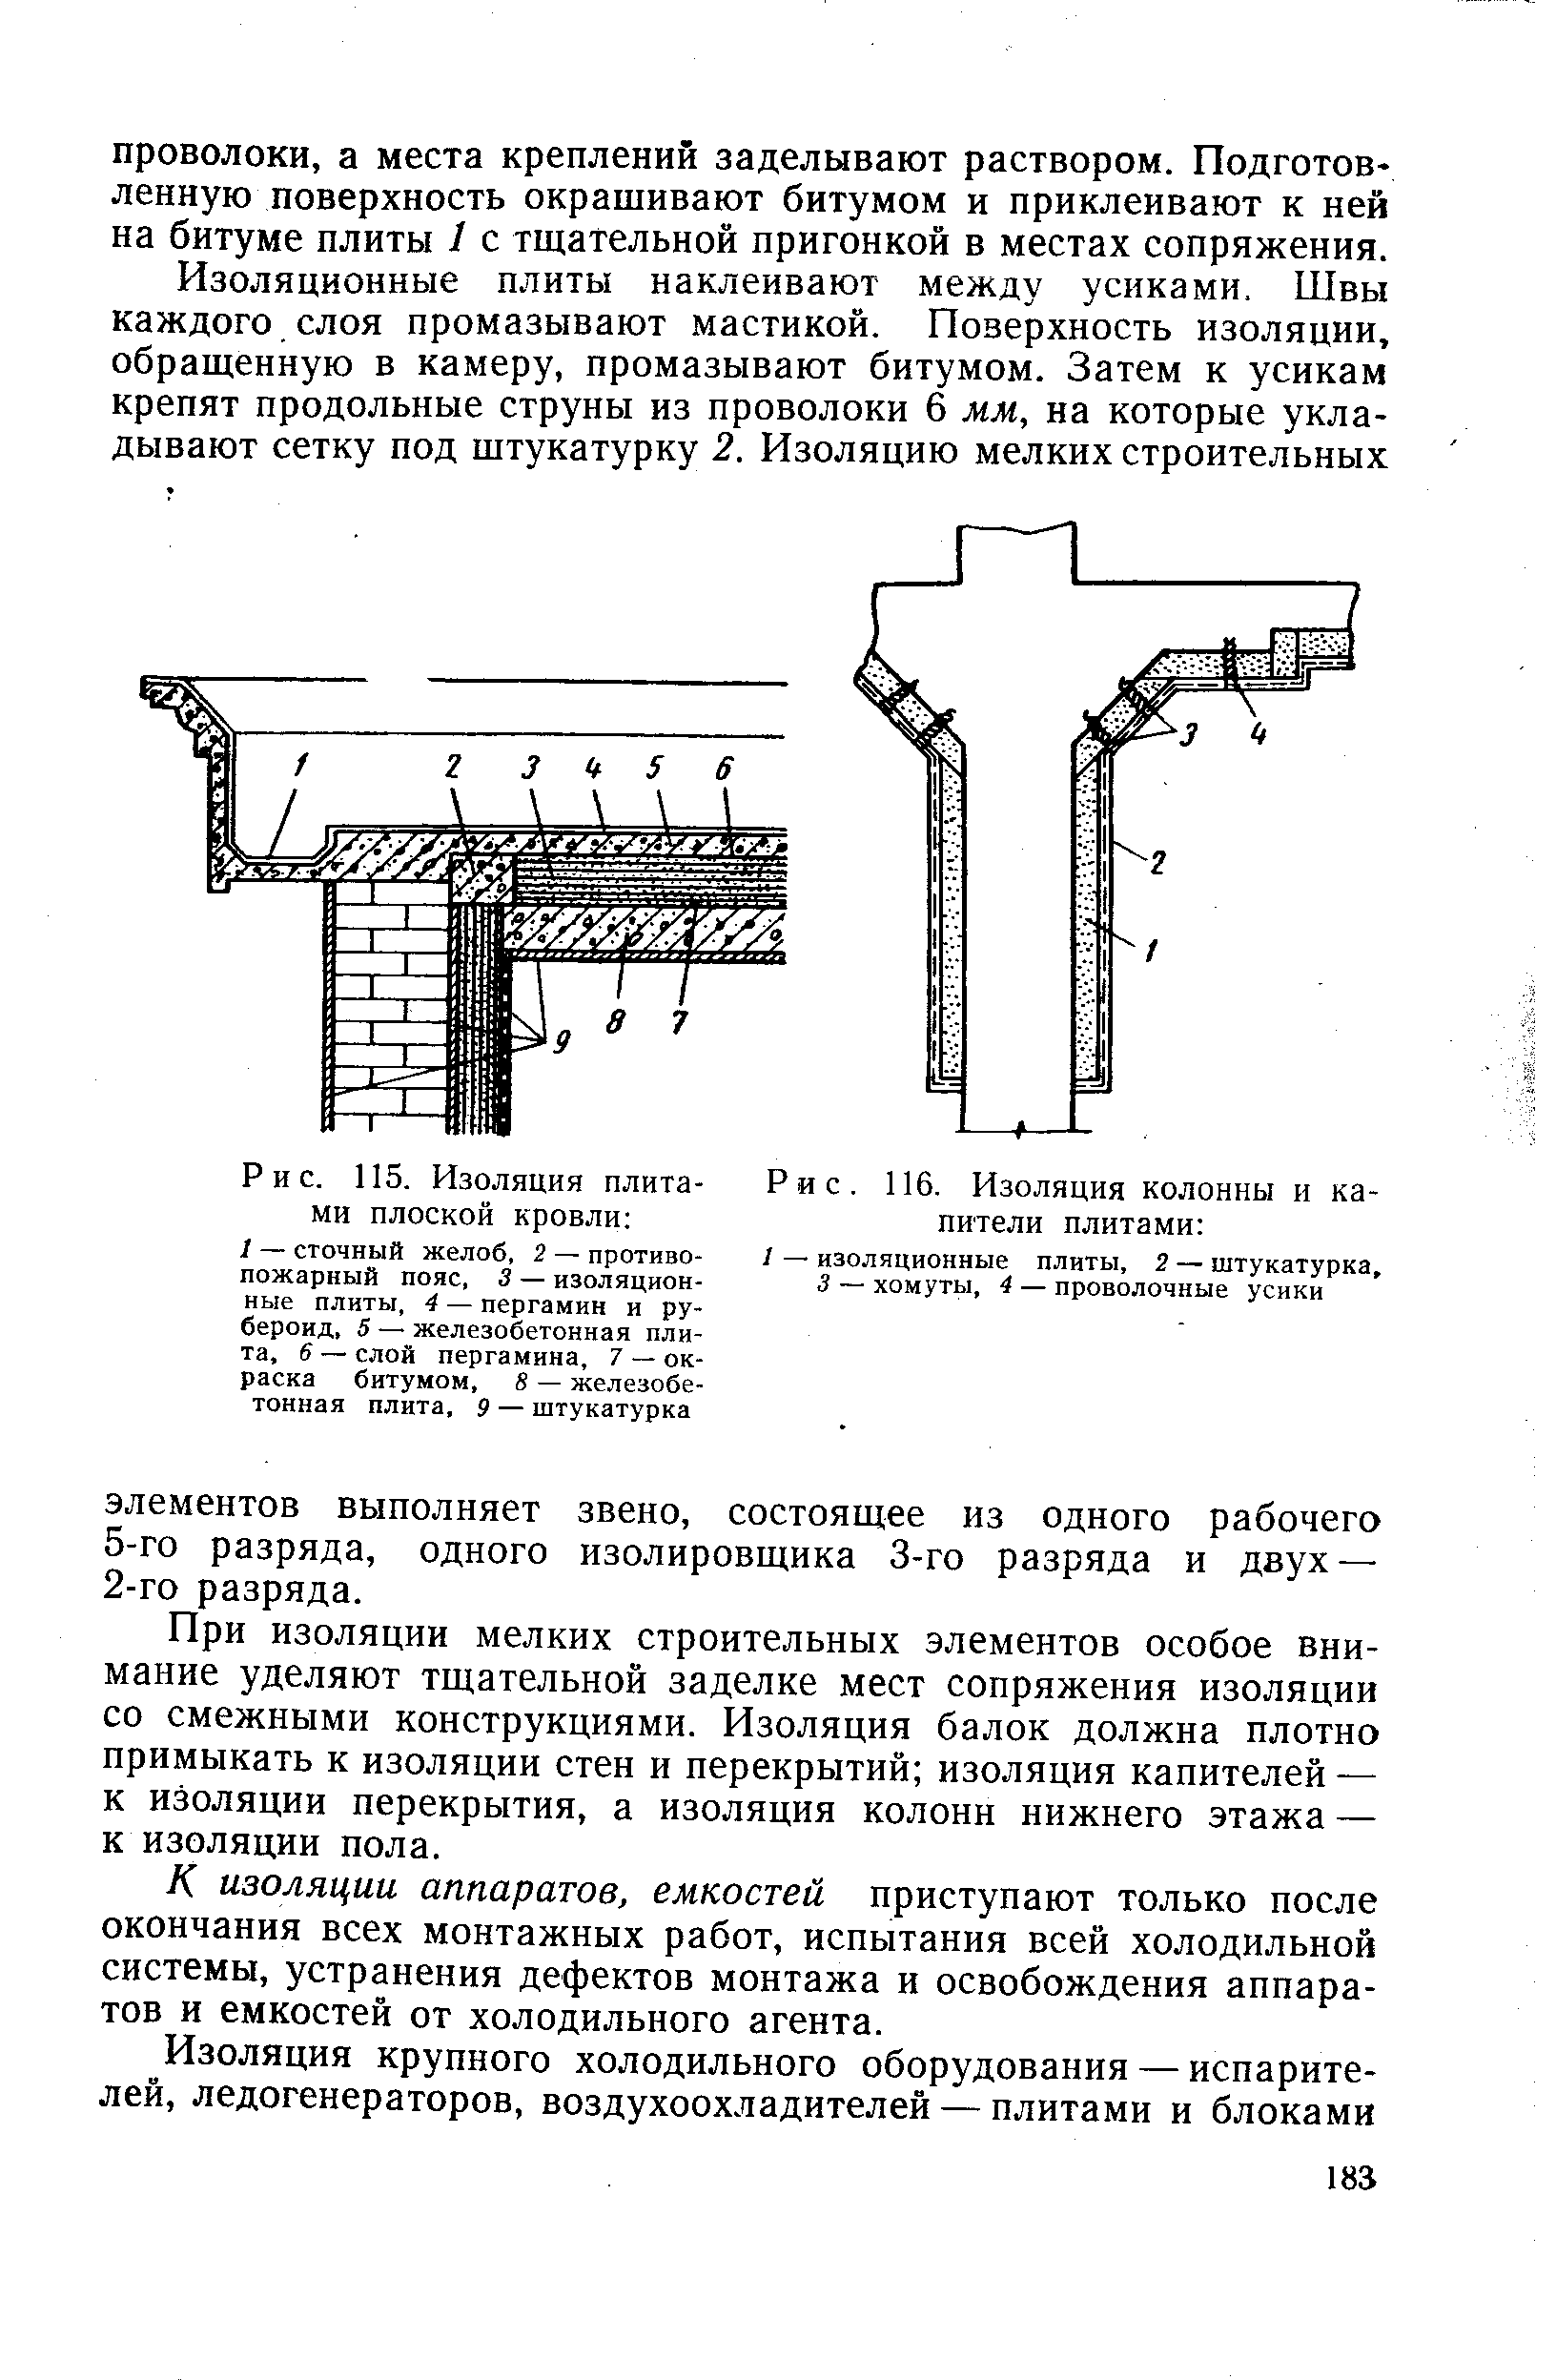 Рис. 116. Изоляция колонны и капители плитами 
